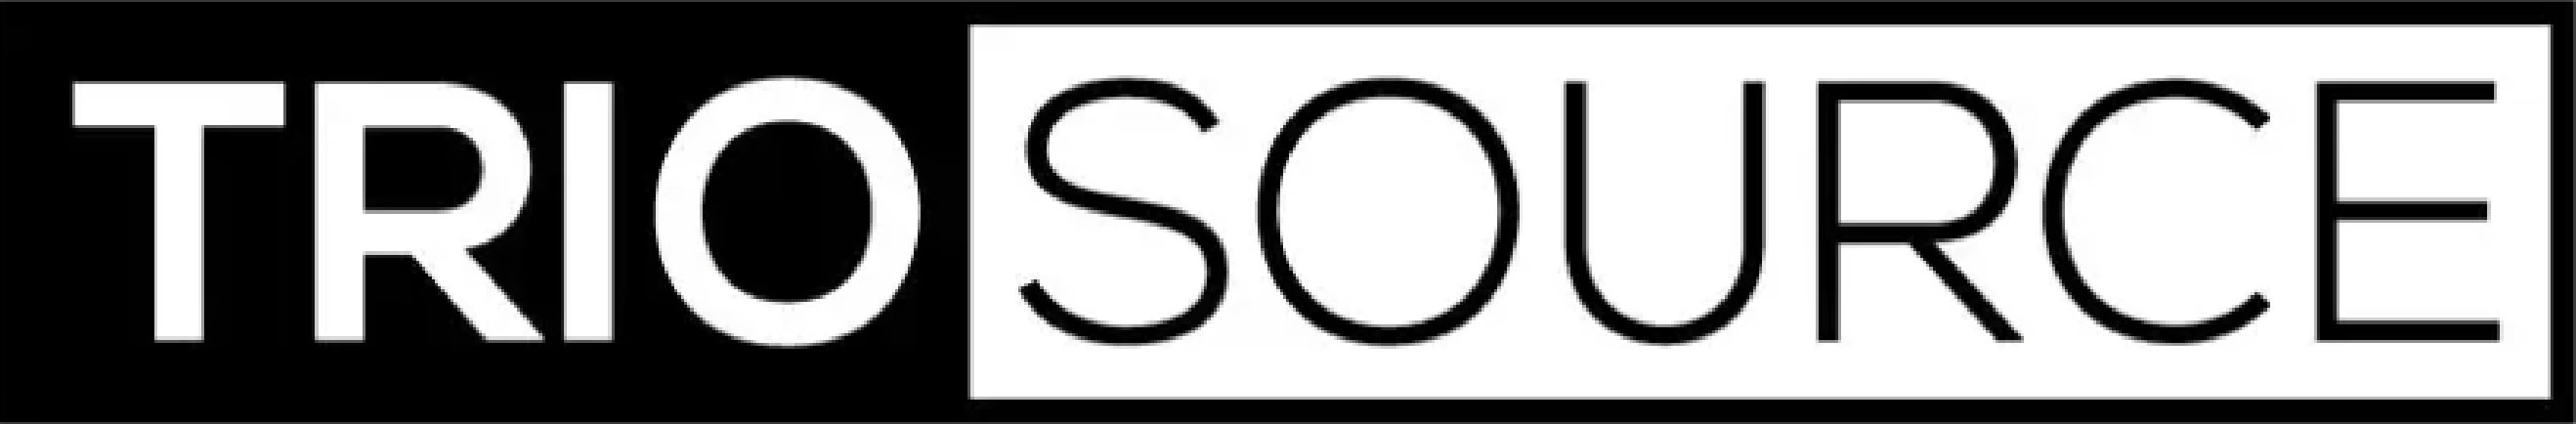 triosource logo